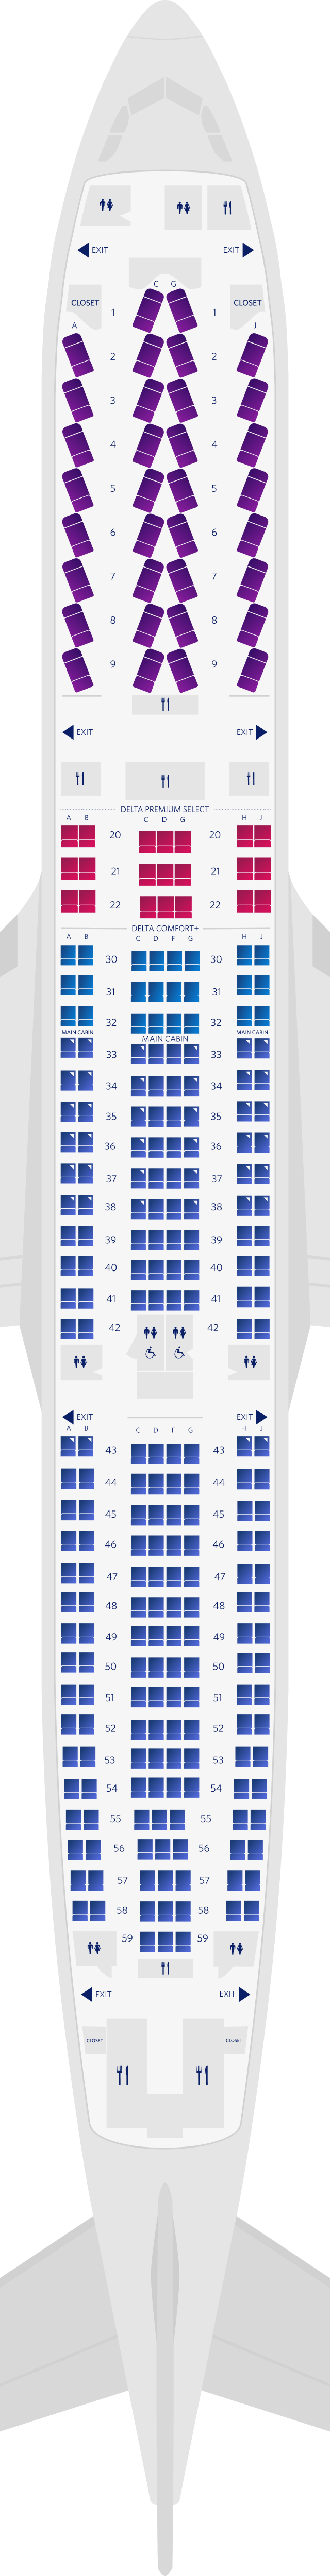 Plan des sièges de l'Airbus A330-300 4 (3M3)